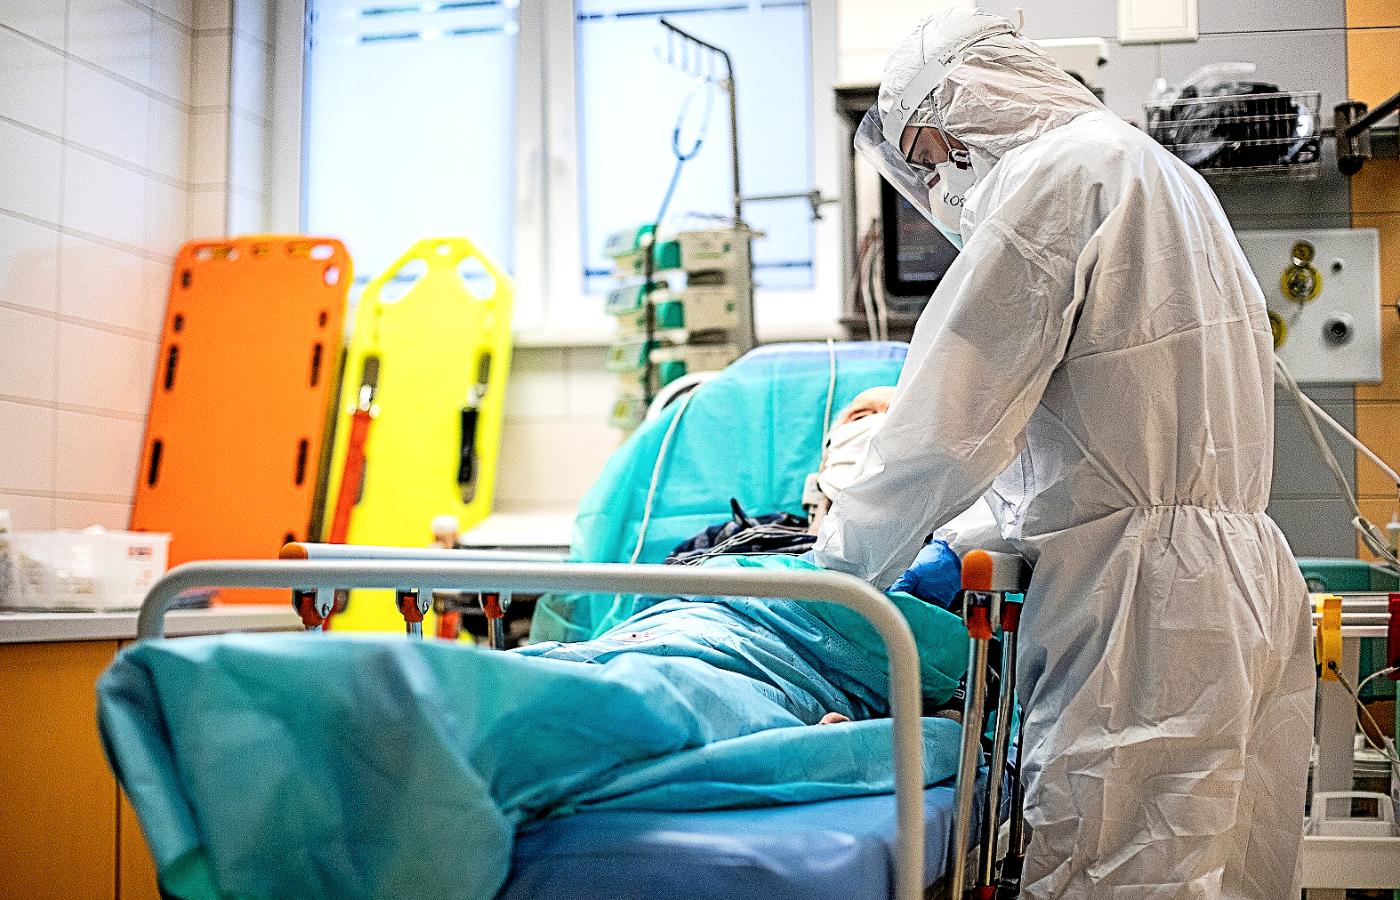 Samodzielny Publiczny Szpital Kliniczny Numer 4 w Lublinie w czasie epidemii koronawirusa